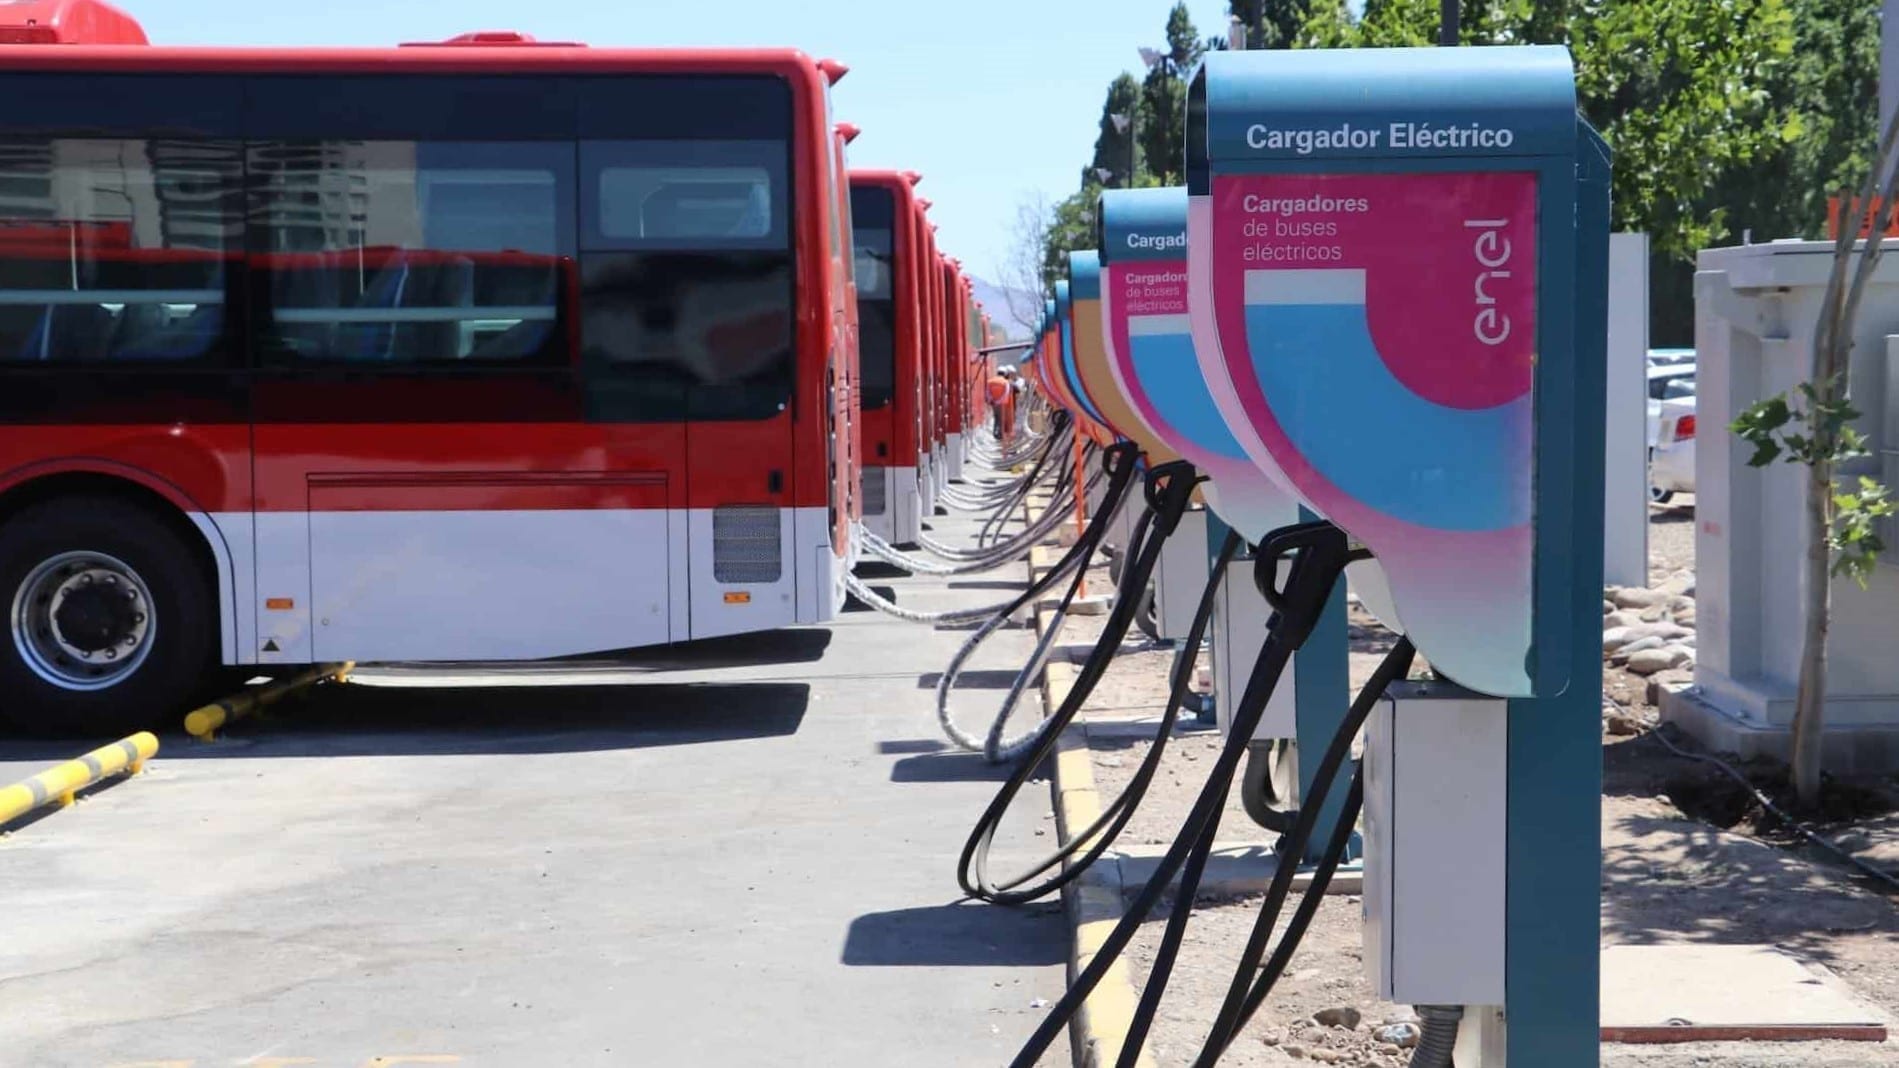 Posto de carregamento de ônibus elétrico no Chile: Eletrificação do transporte público sobre rodas é viável economicamente no Brasil, diz Paulo Maisonnave, head de Mobilidade Elétrica da Enel X no Brasil